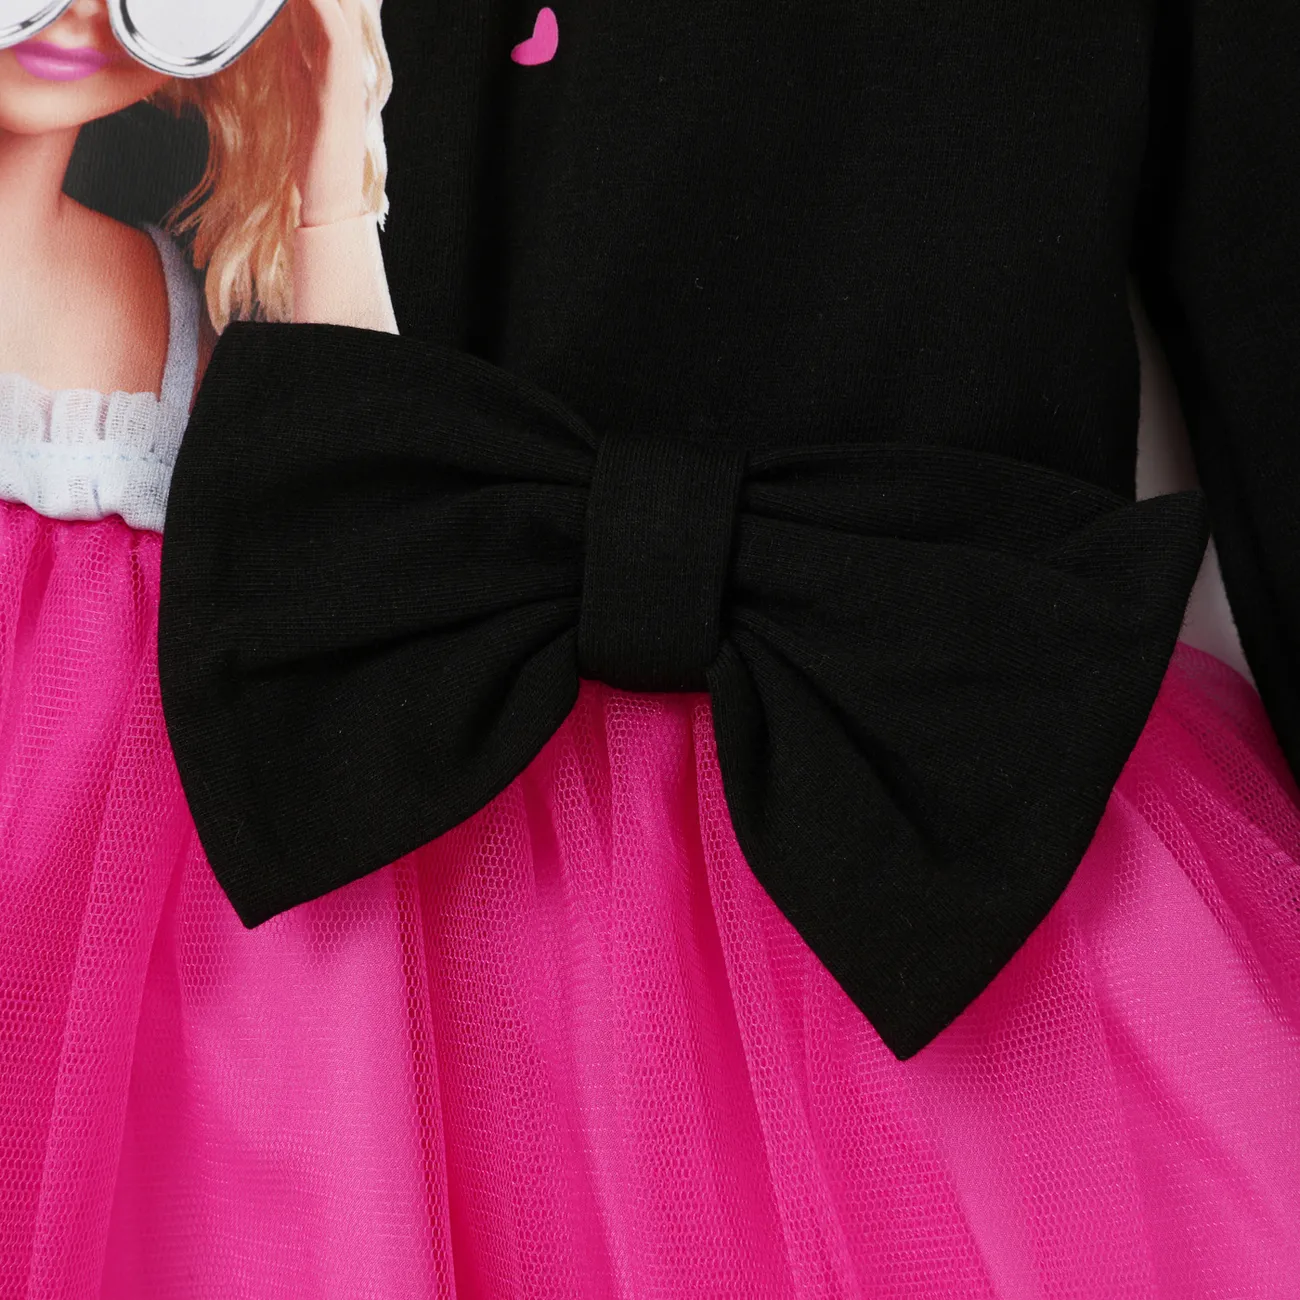 Barbie Niño pequeño Chica A capas Dulce Vestidos rosado big image 1